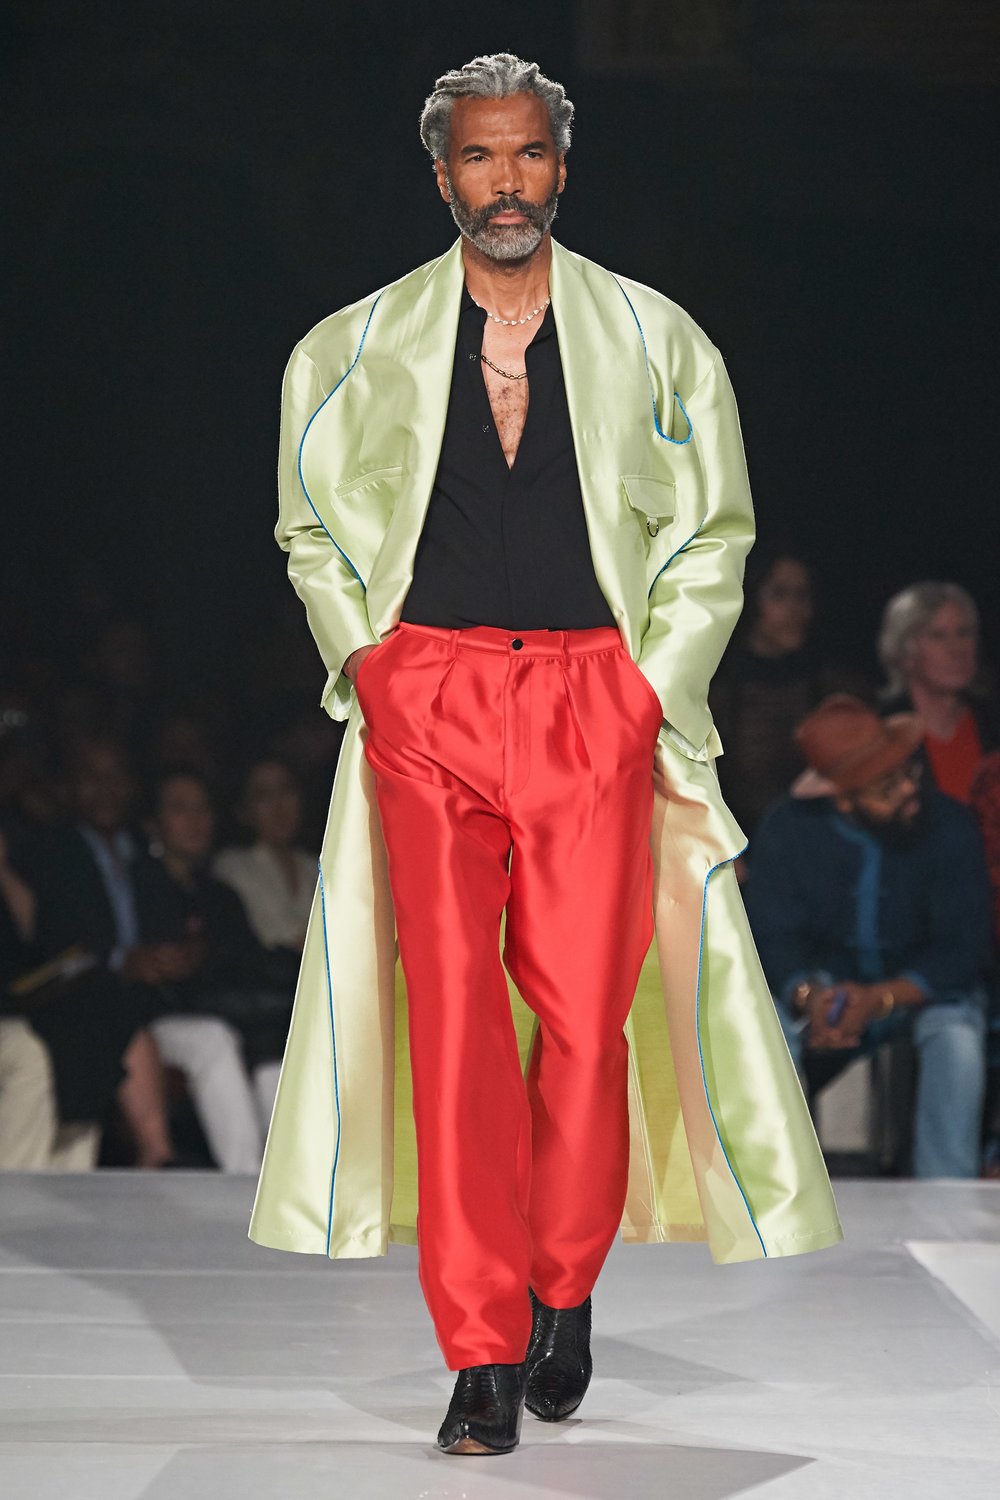 Virgil Abloh says his Louis Vuitton fashion designs aren't 'copycat